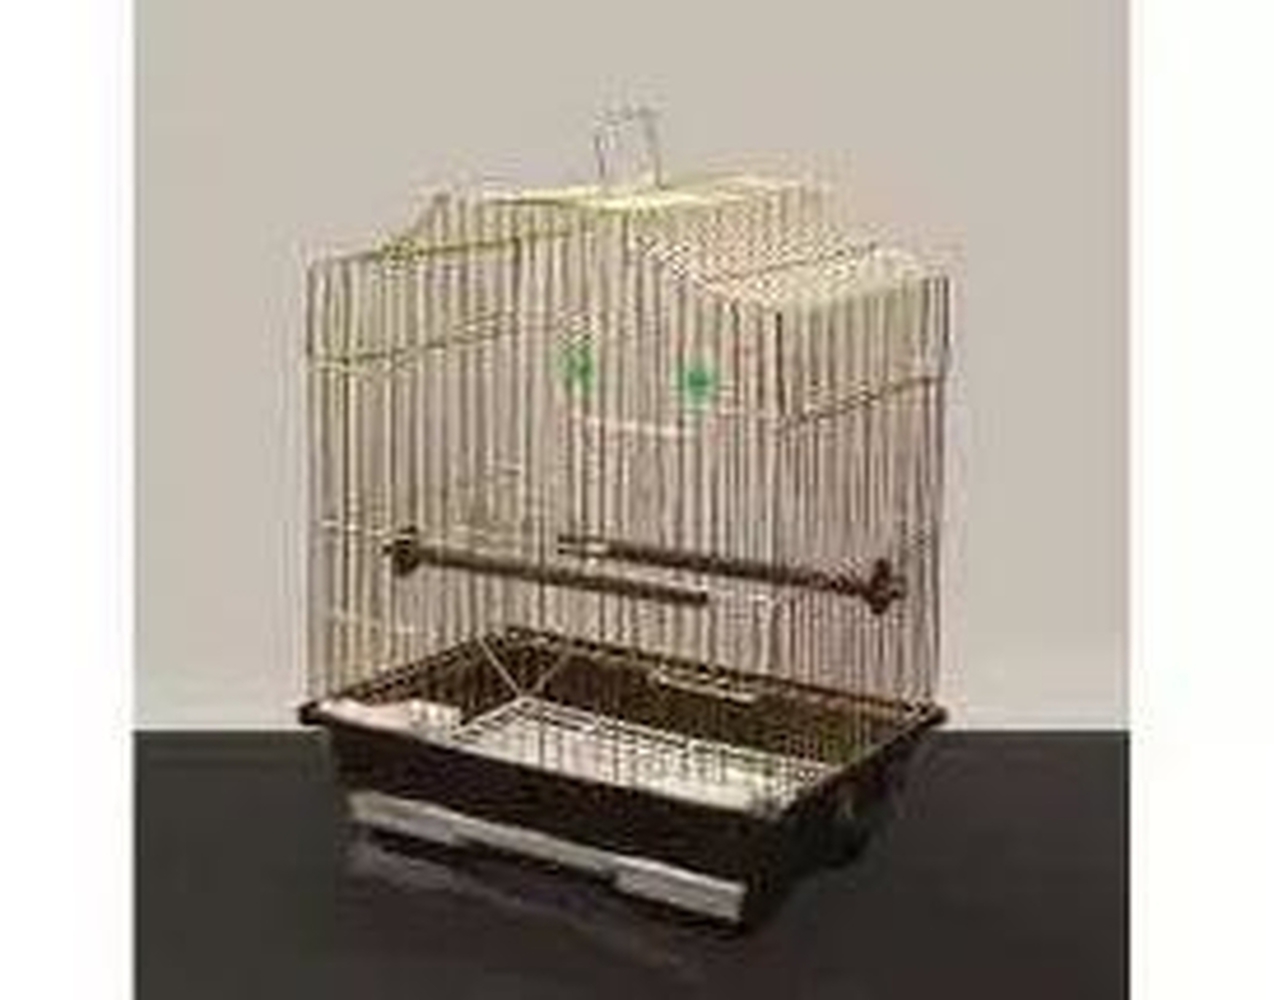 Фото Клетка Golden cage A112G для мелких птиц (30*23*39 см)